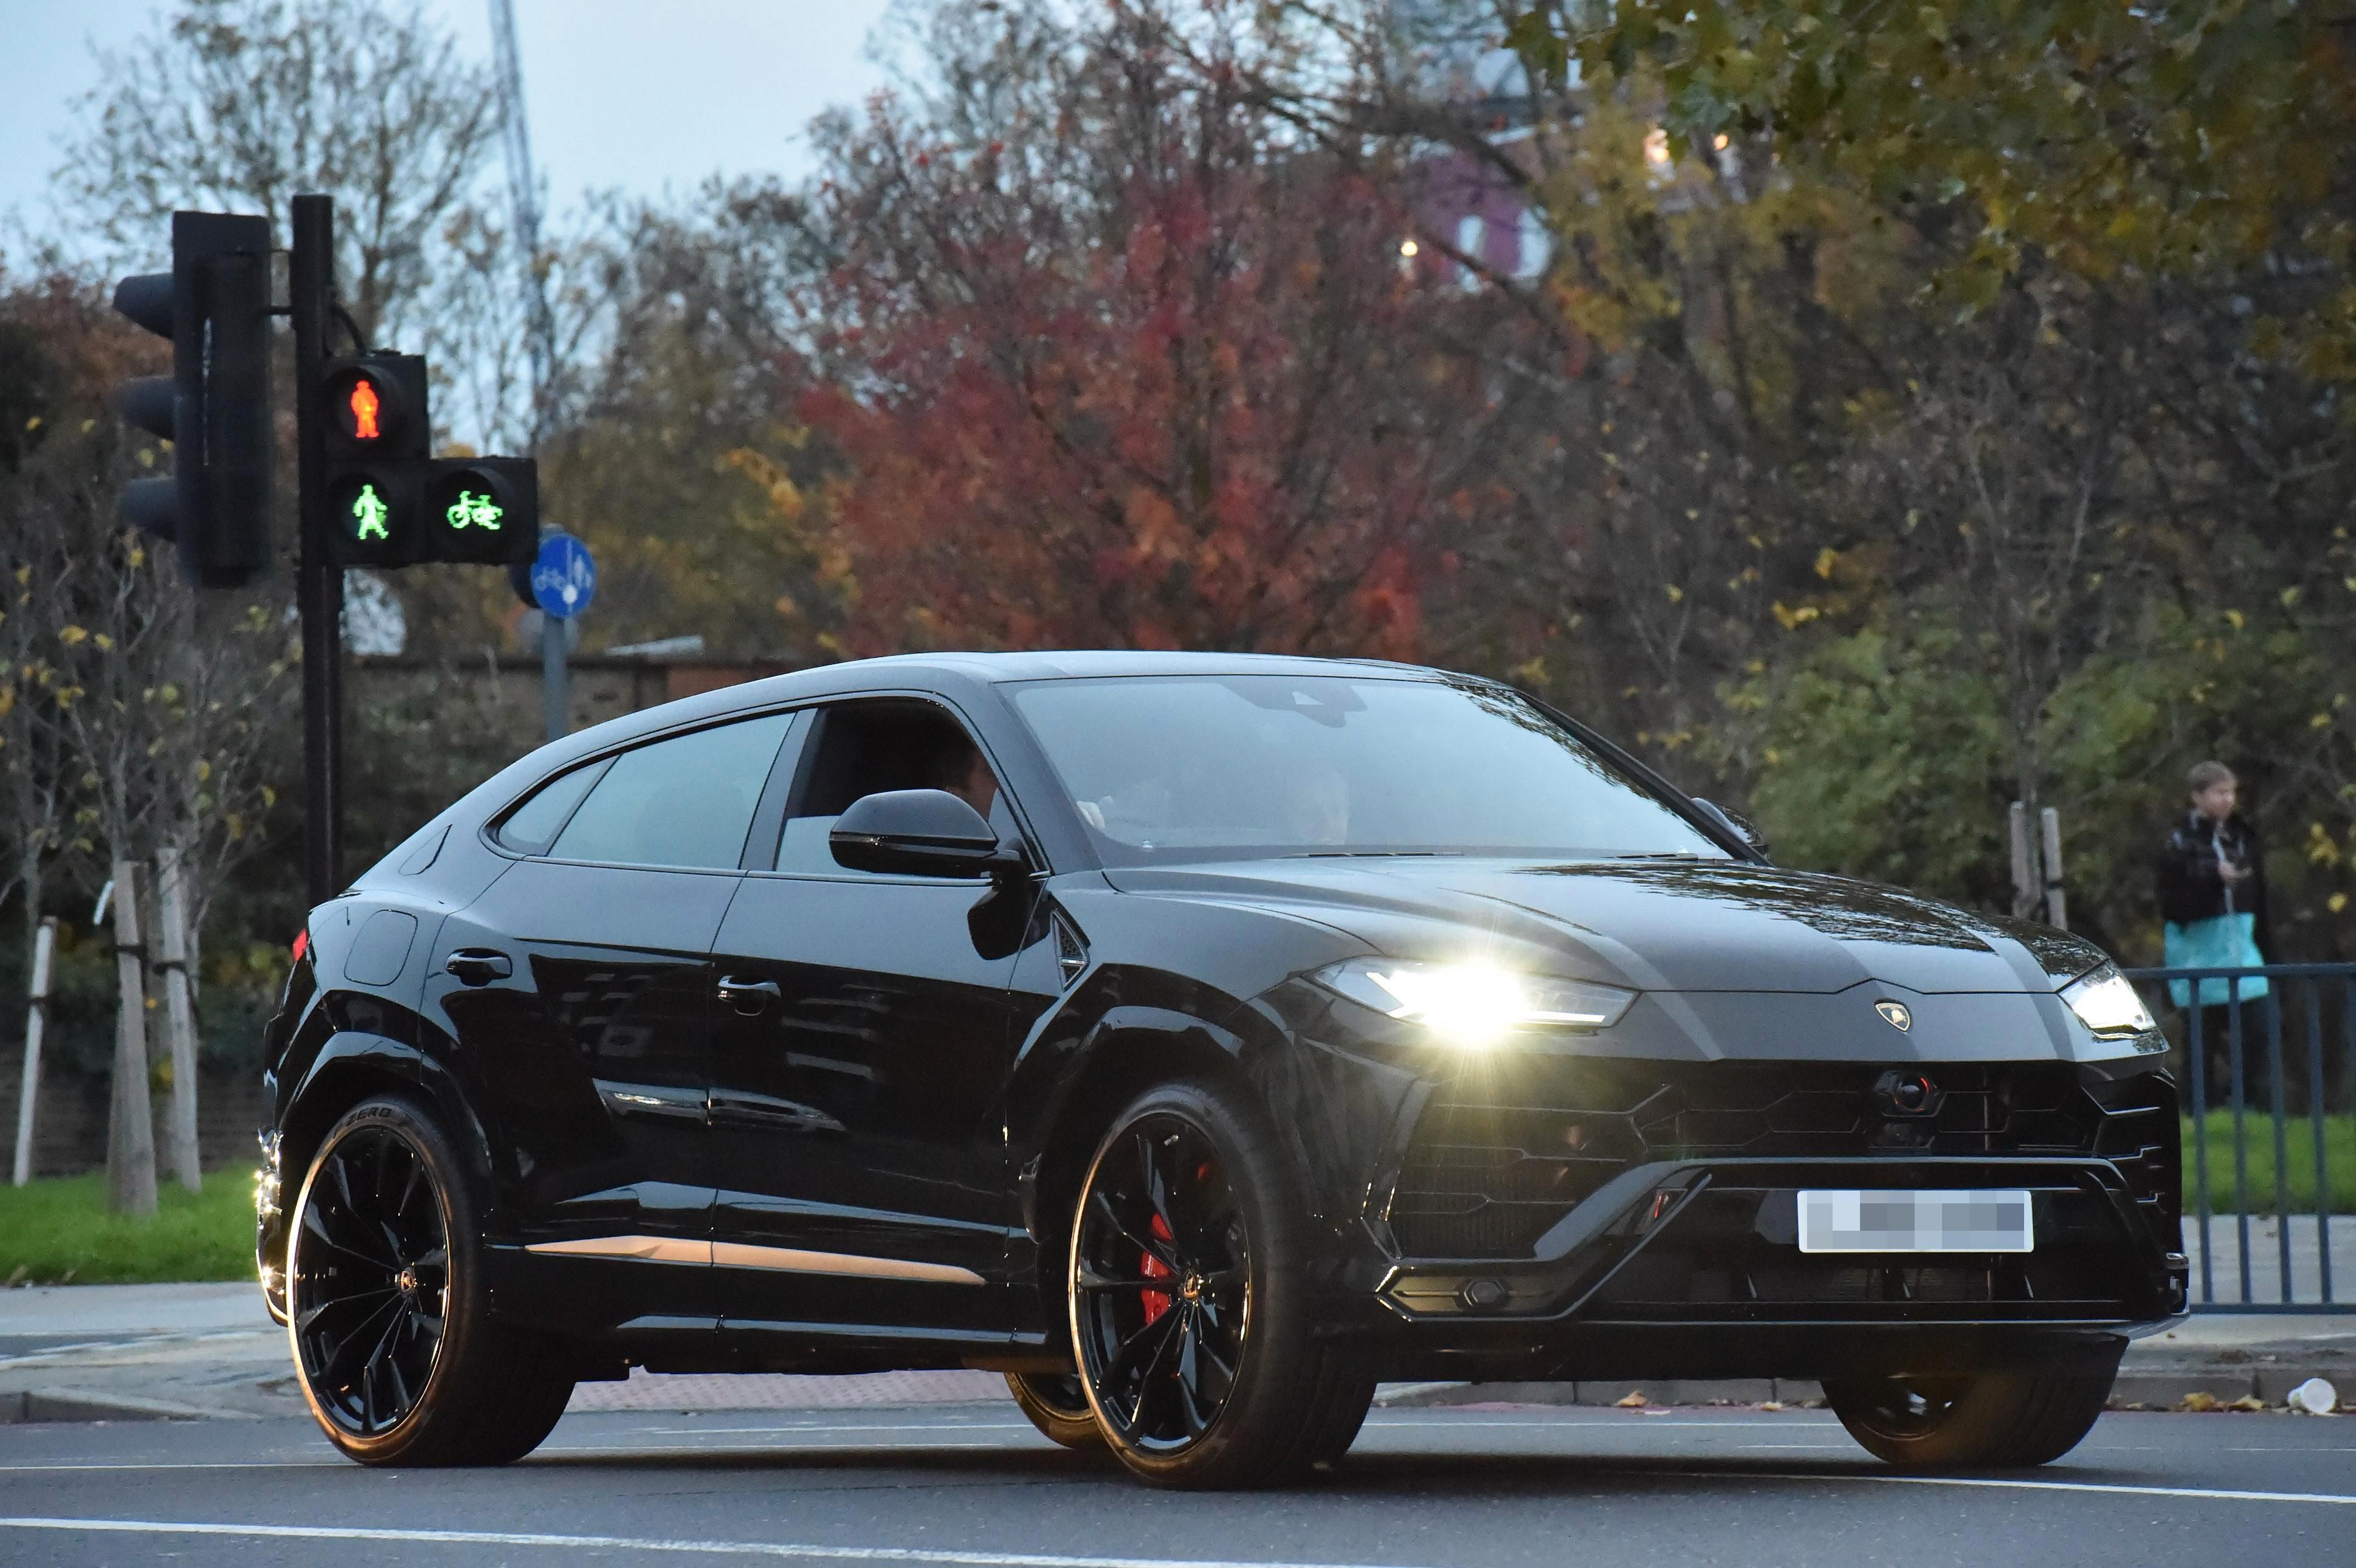 Simon Cowell driving his black Lamborghini Urus on the street